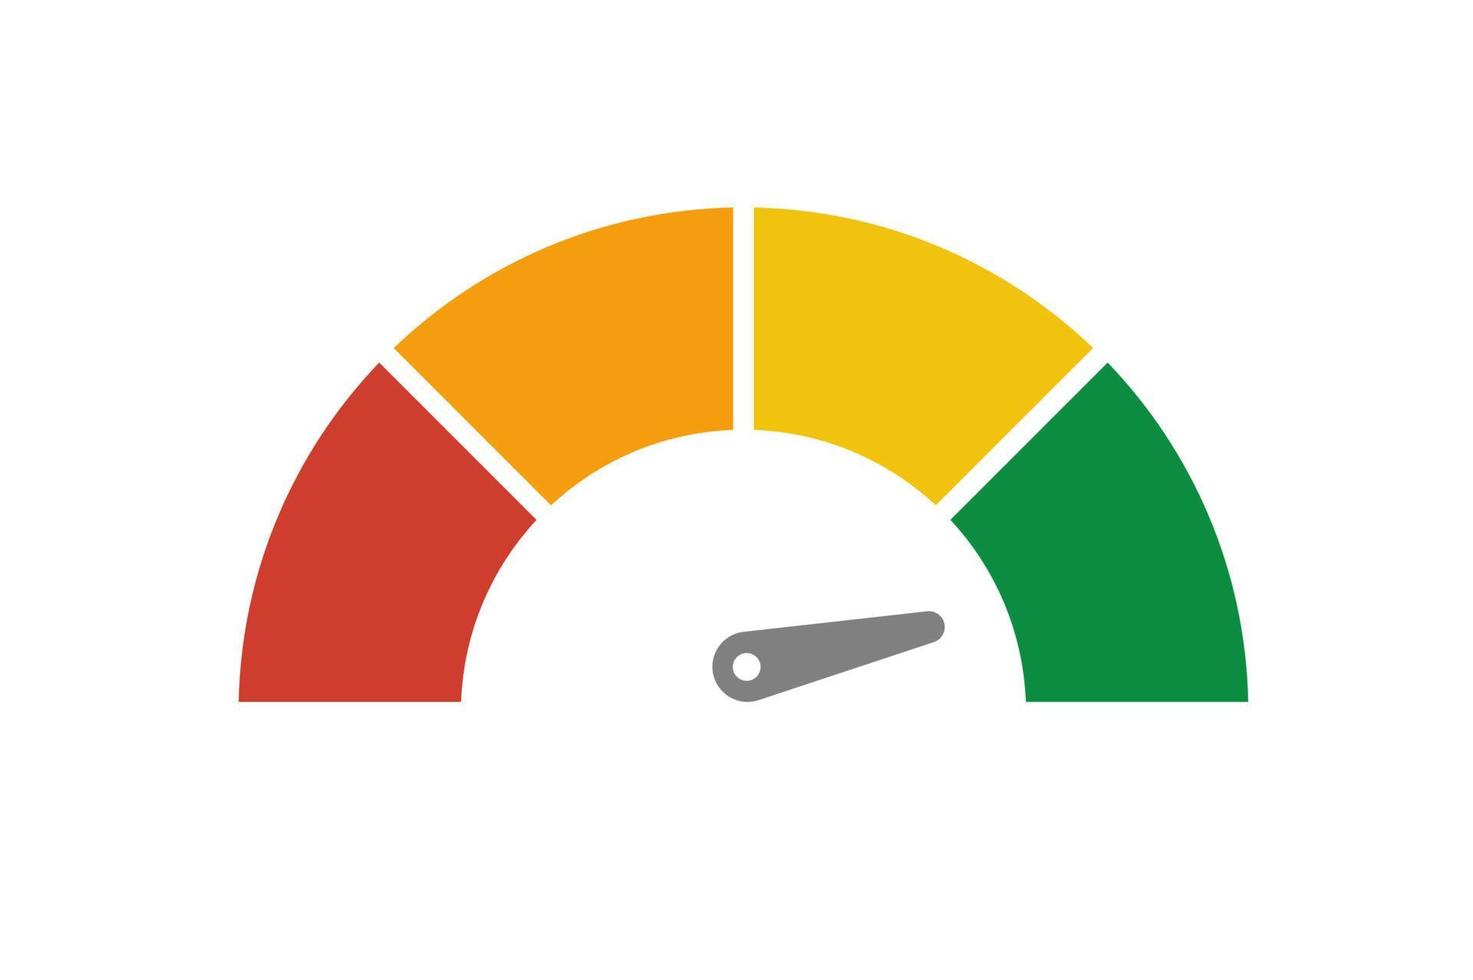 velocímetro vetorial com seta para painel com indicadores verdes, amarelos e vermelhos. calibre do tacômetro. níveis baixo, médio, alto e de risco. bitcoin índice de medo e ganância criptomoeda vetor